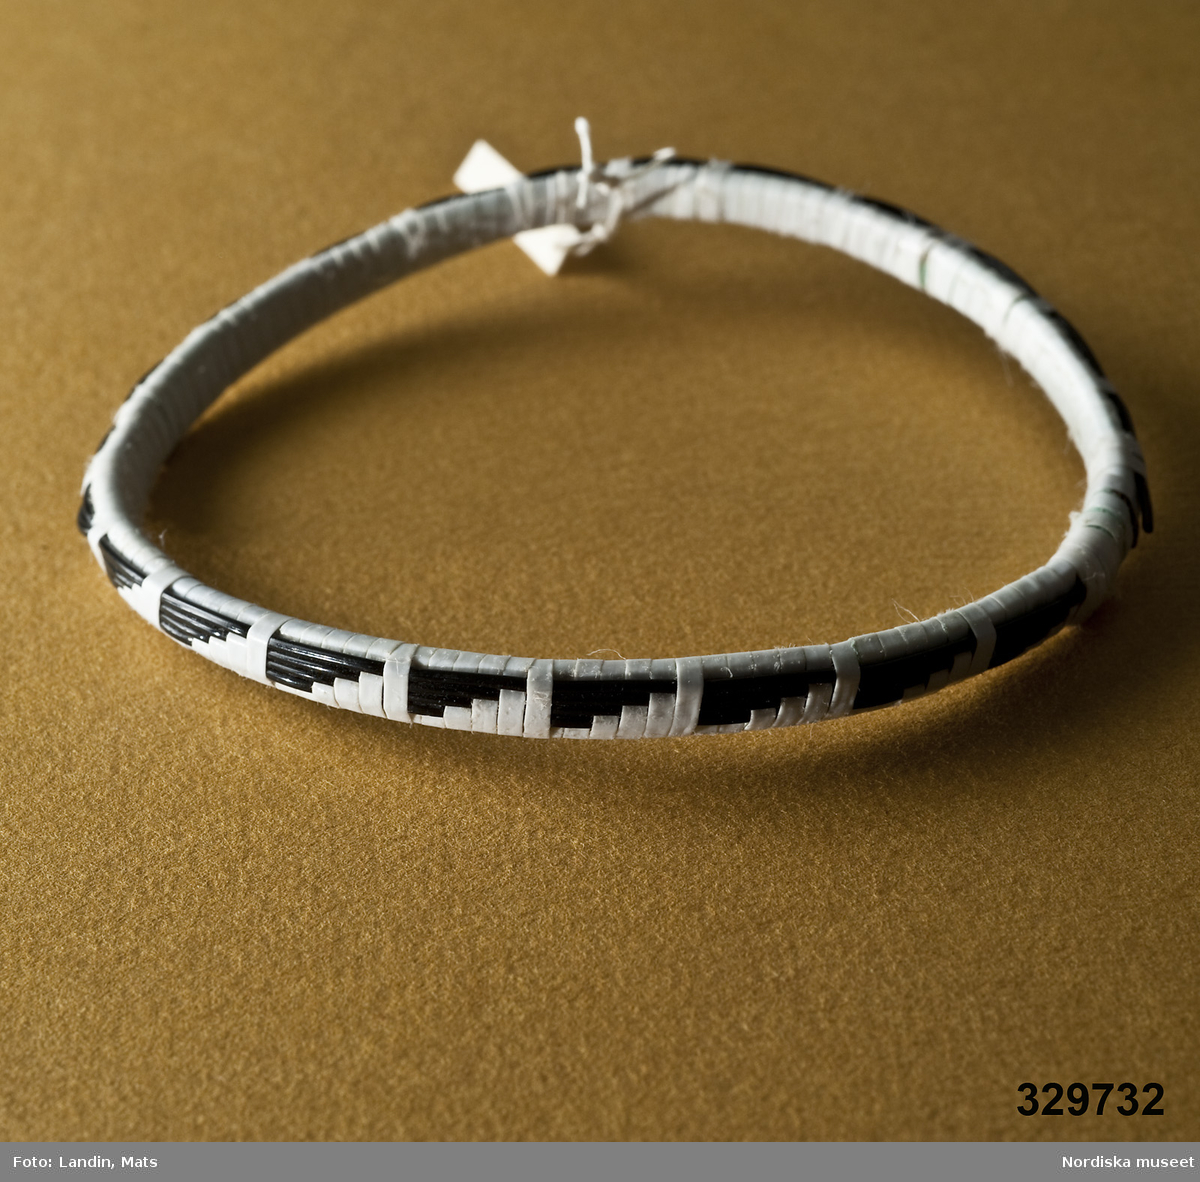 Runt armband vävt av smala plastband med mönster i svart och vitt. Afrikanska eller sydamerikanska influenser.
/Zingoalla Rosenqvist 2009-02-05